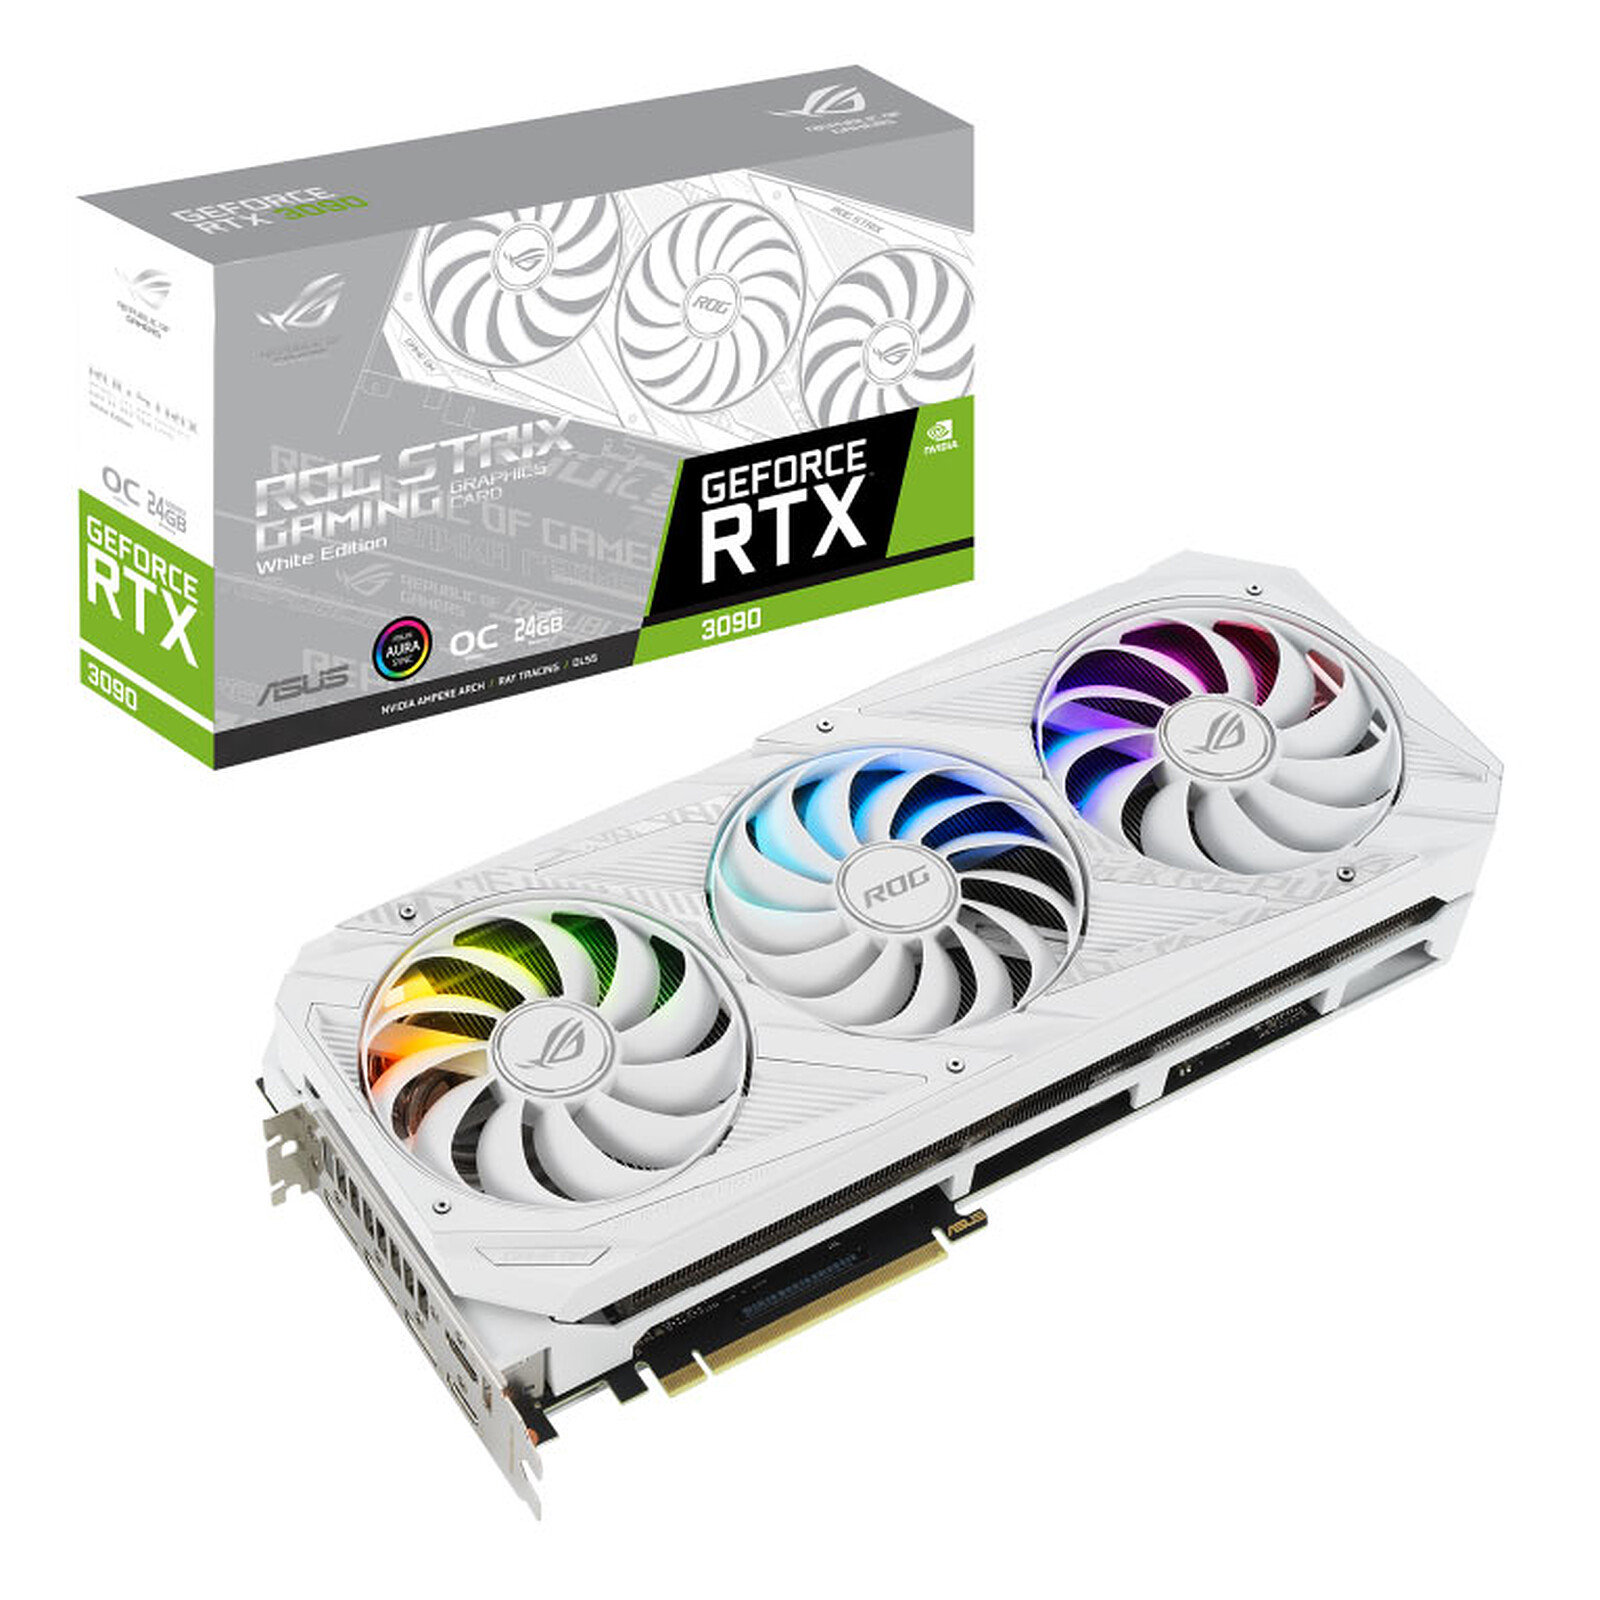 À partir de 379 €, les cartes graphiques Nvidia RTX 3000